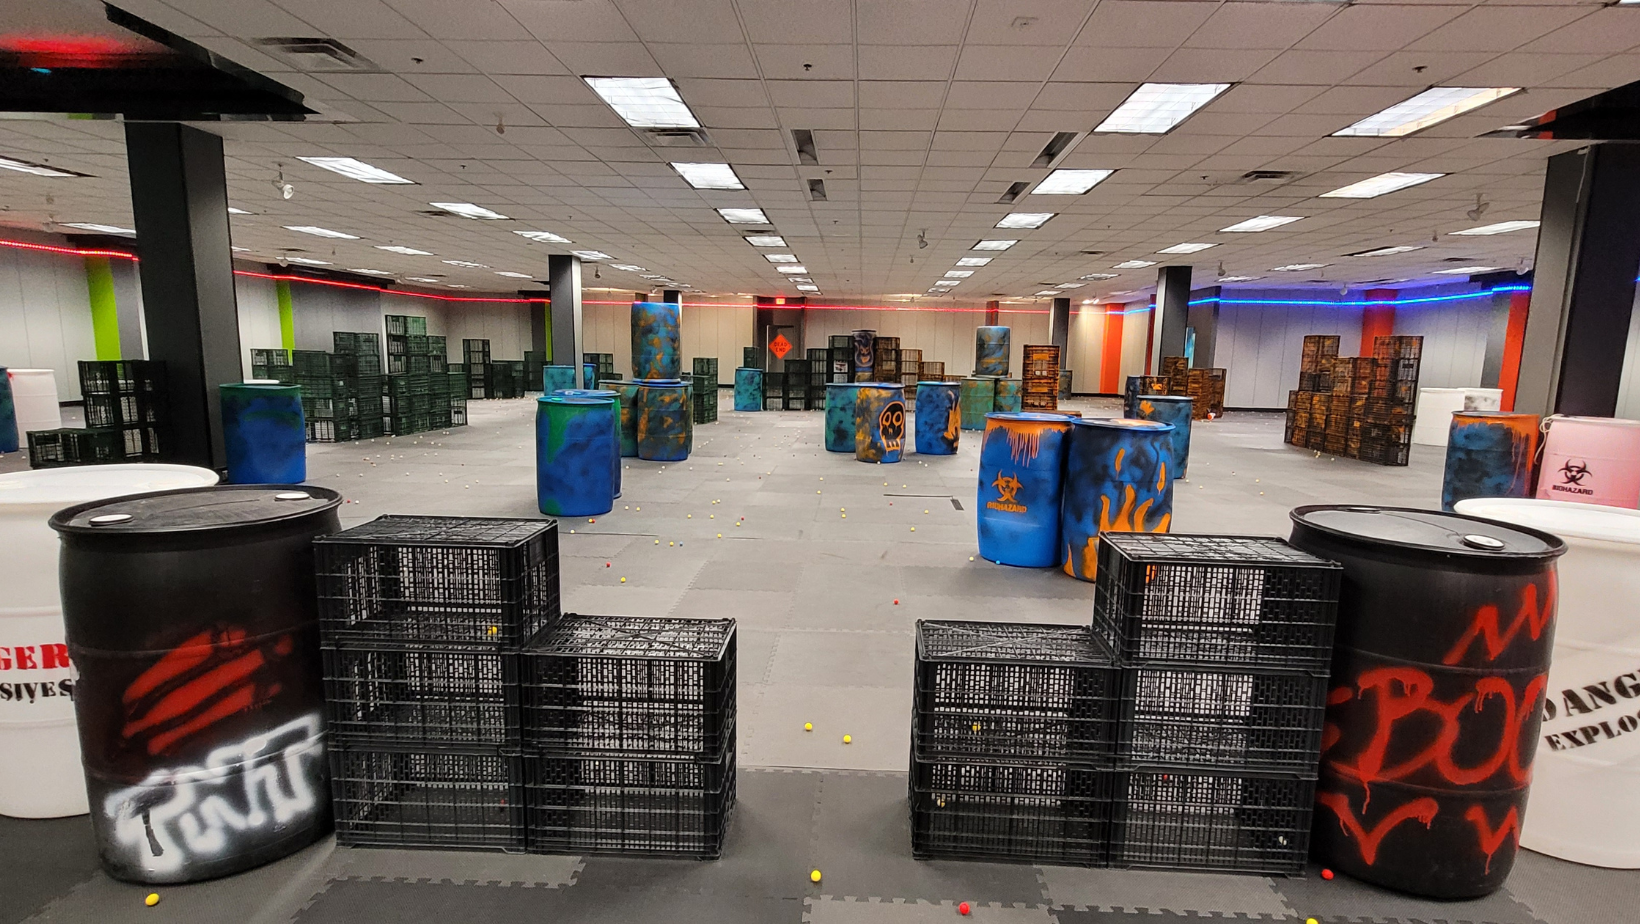 Massive indoor Nerf battle arena opens in Cincinnati